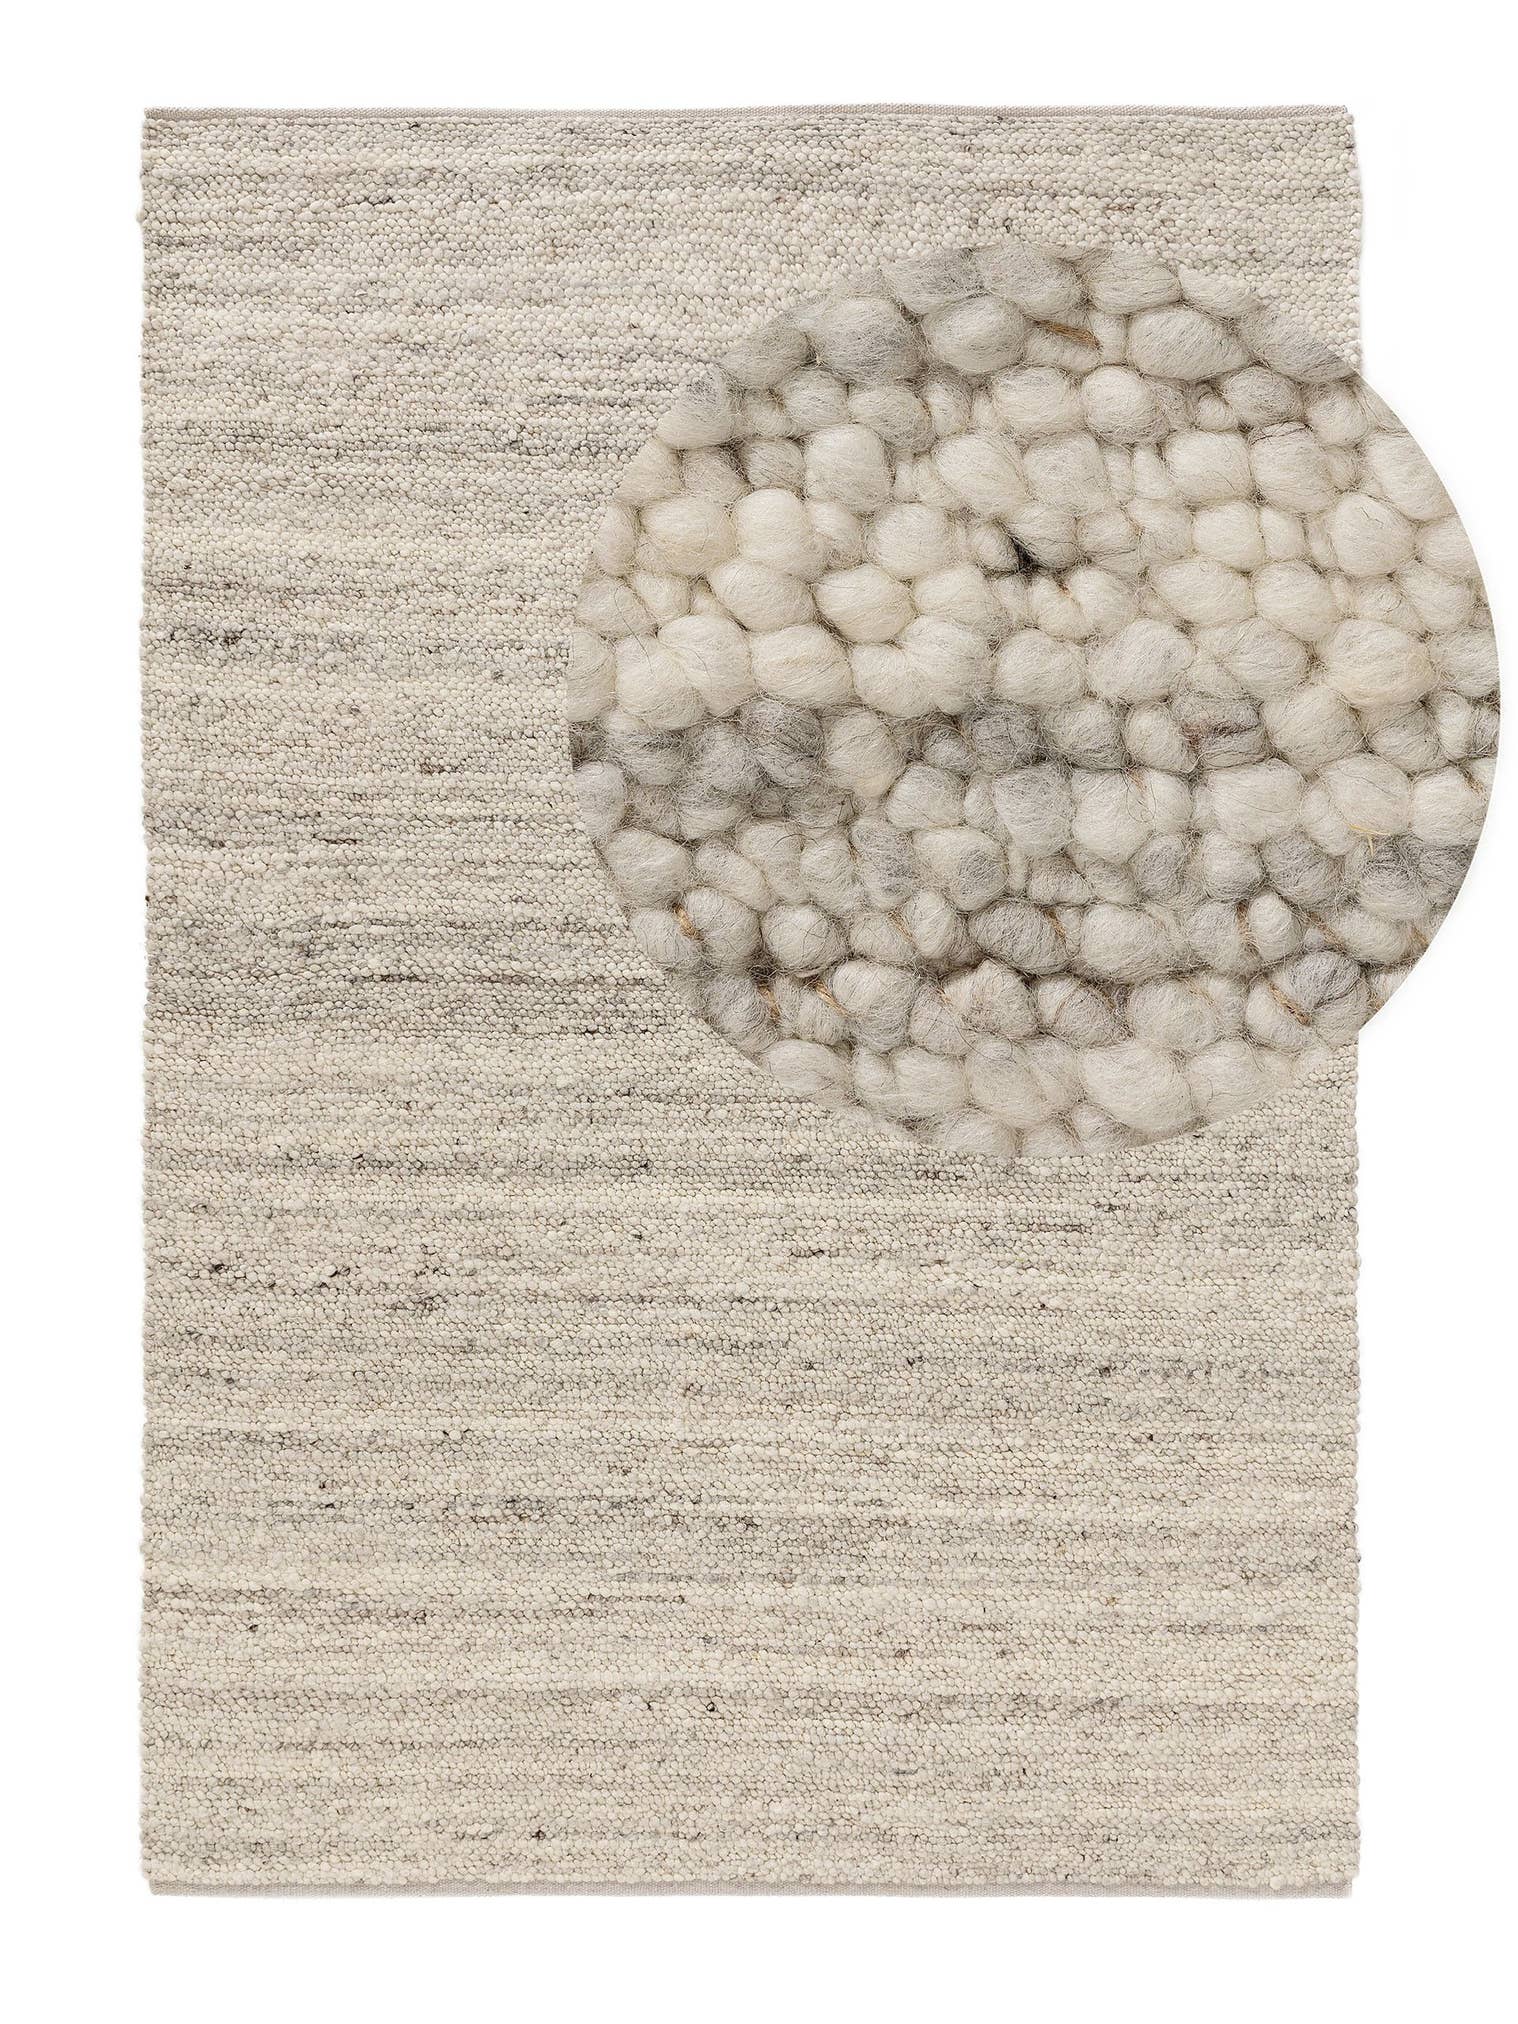 Teppich aus 70% Wolle, 30% Jute in Grau mit 11 bis 20 mm hohem Flor von benuta Pure